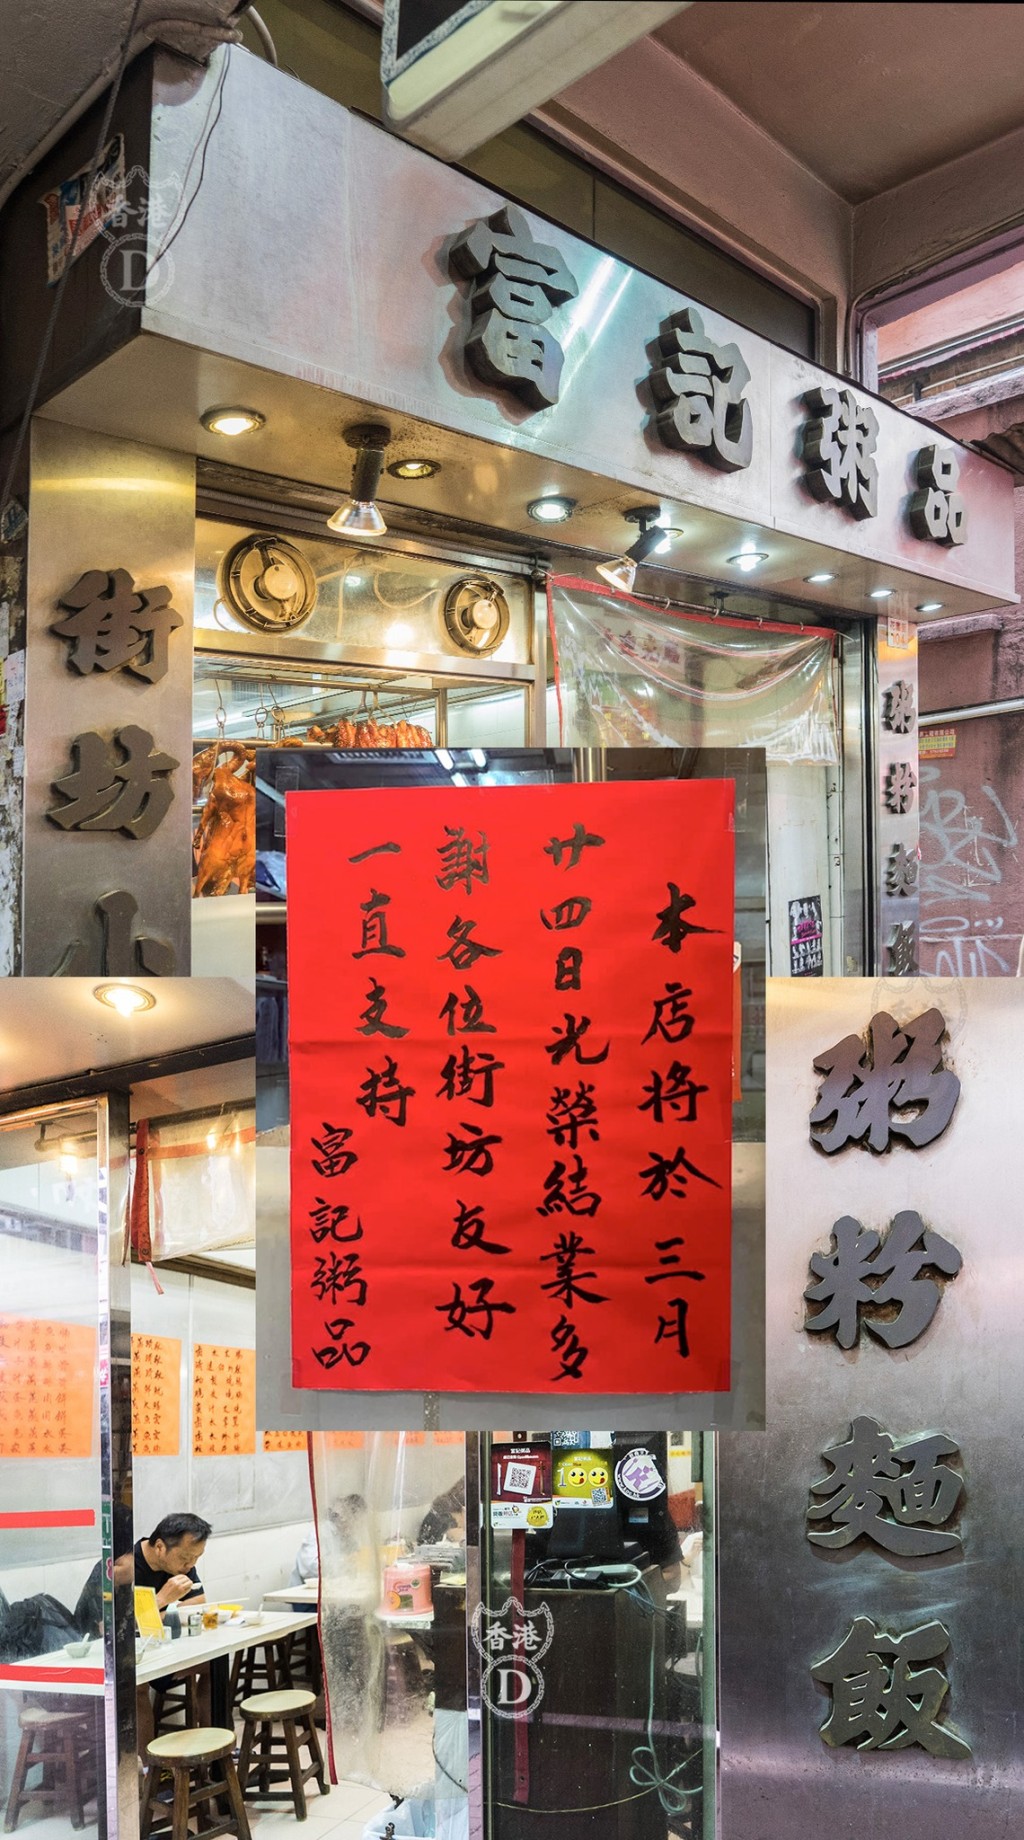 旺角花园街富记粥品贴告示指将于3月24日光荣结业。(HONG KONG D 图片)